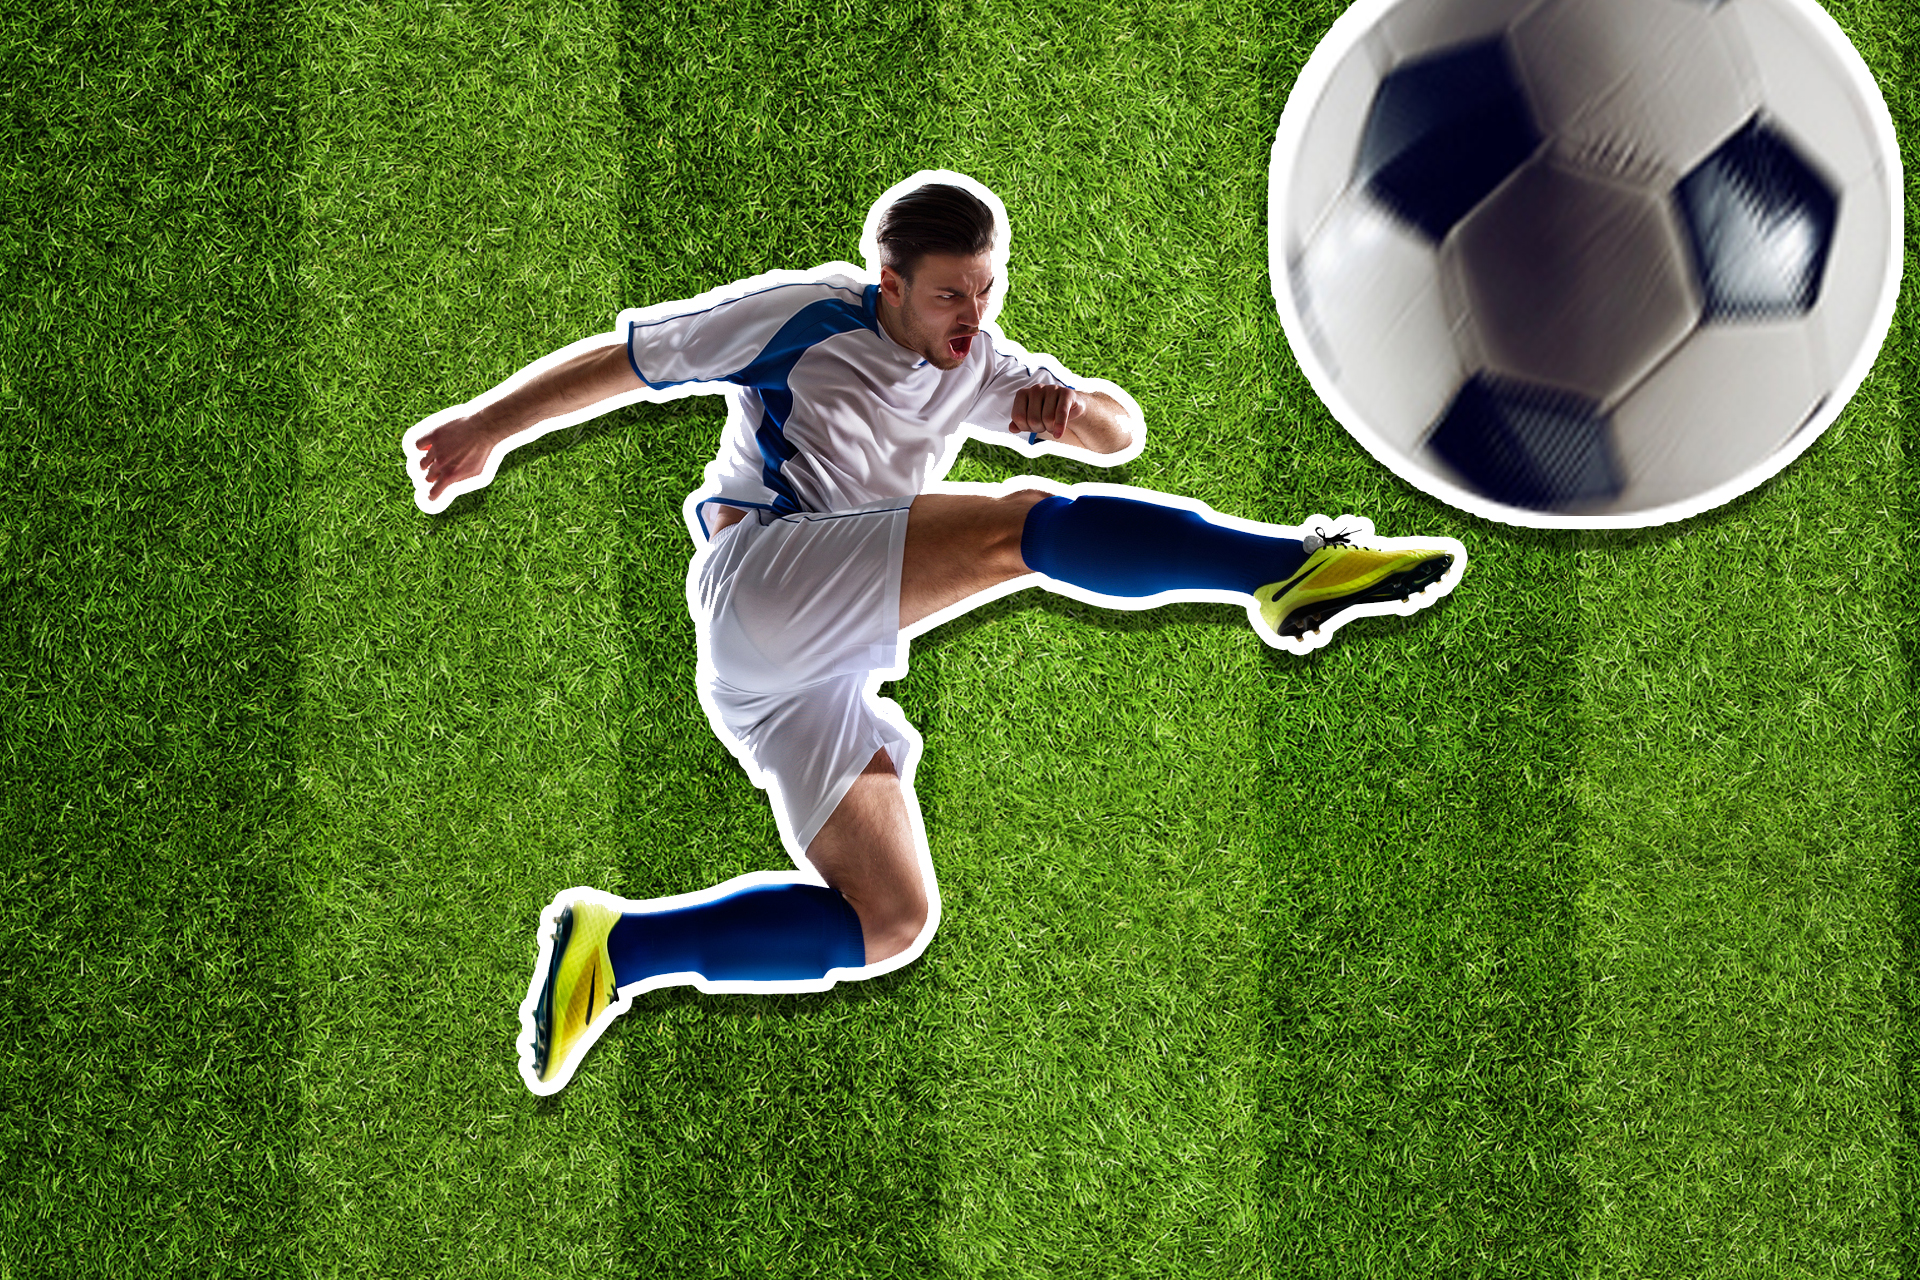 A footballer kicking a massive ball